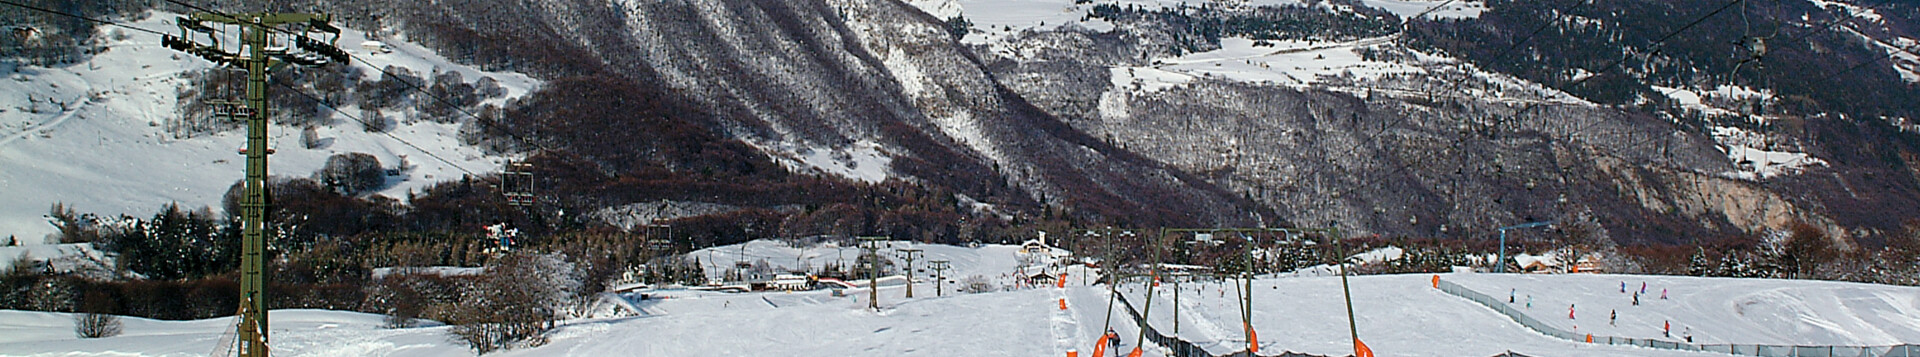 Ski area Polsa-San Valentino  